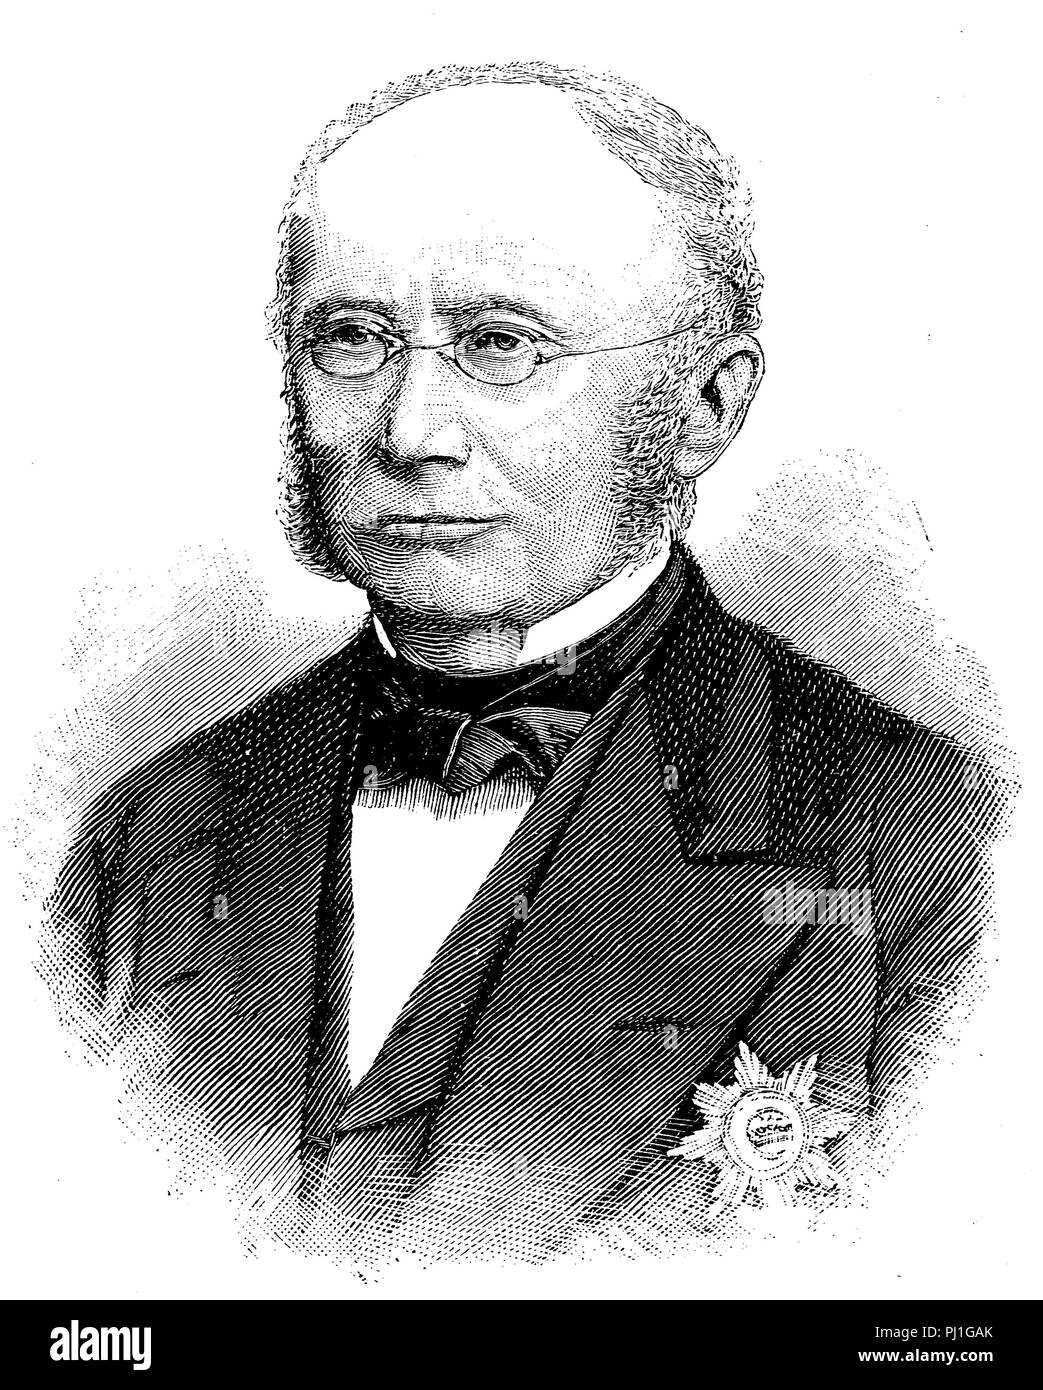 Baron Ludwig von Windthorst, 17. Januar 1812 - 14. März 1891, deutsche Politikerin, digital verbesserte Reproduktion eines woodprint aus dem Jahr 1890 Stockfoto